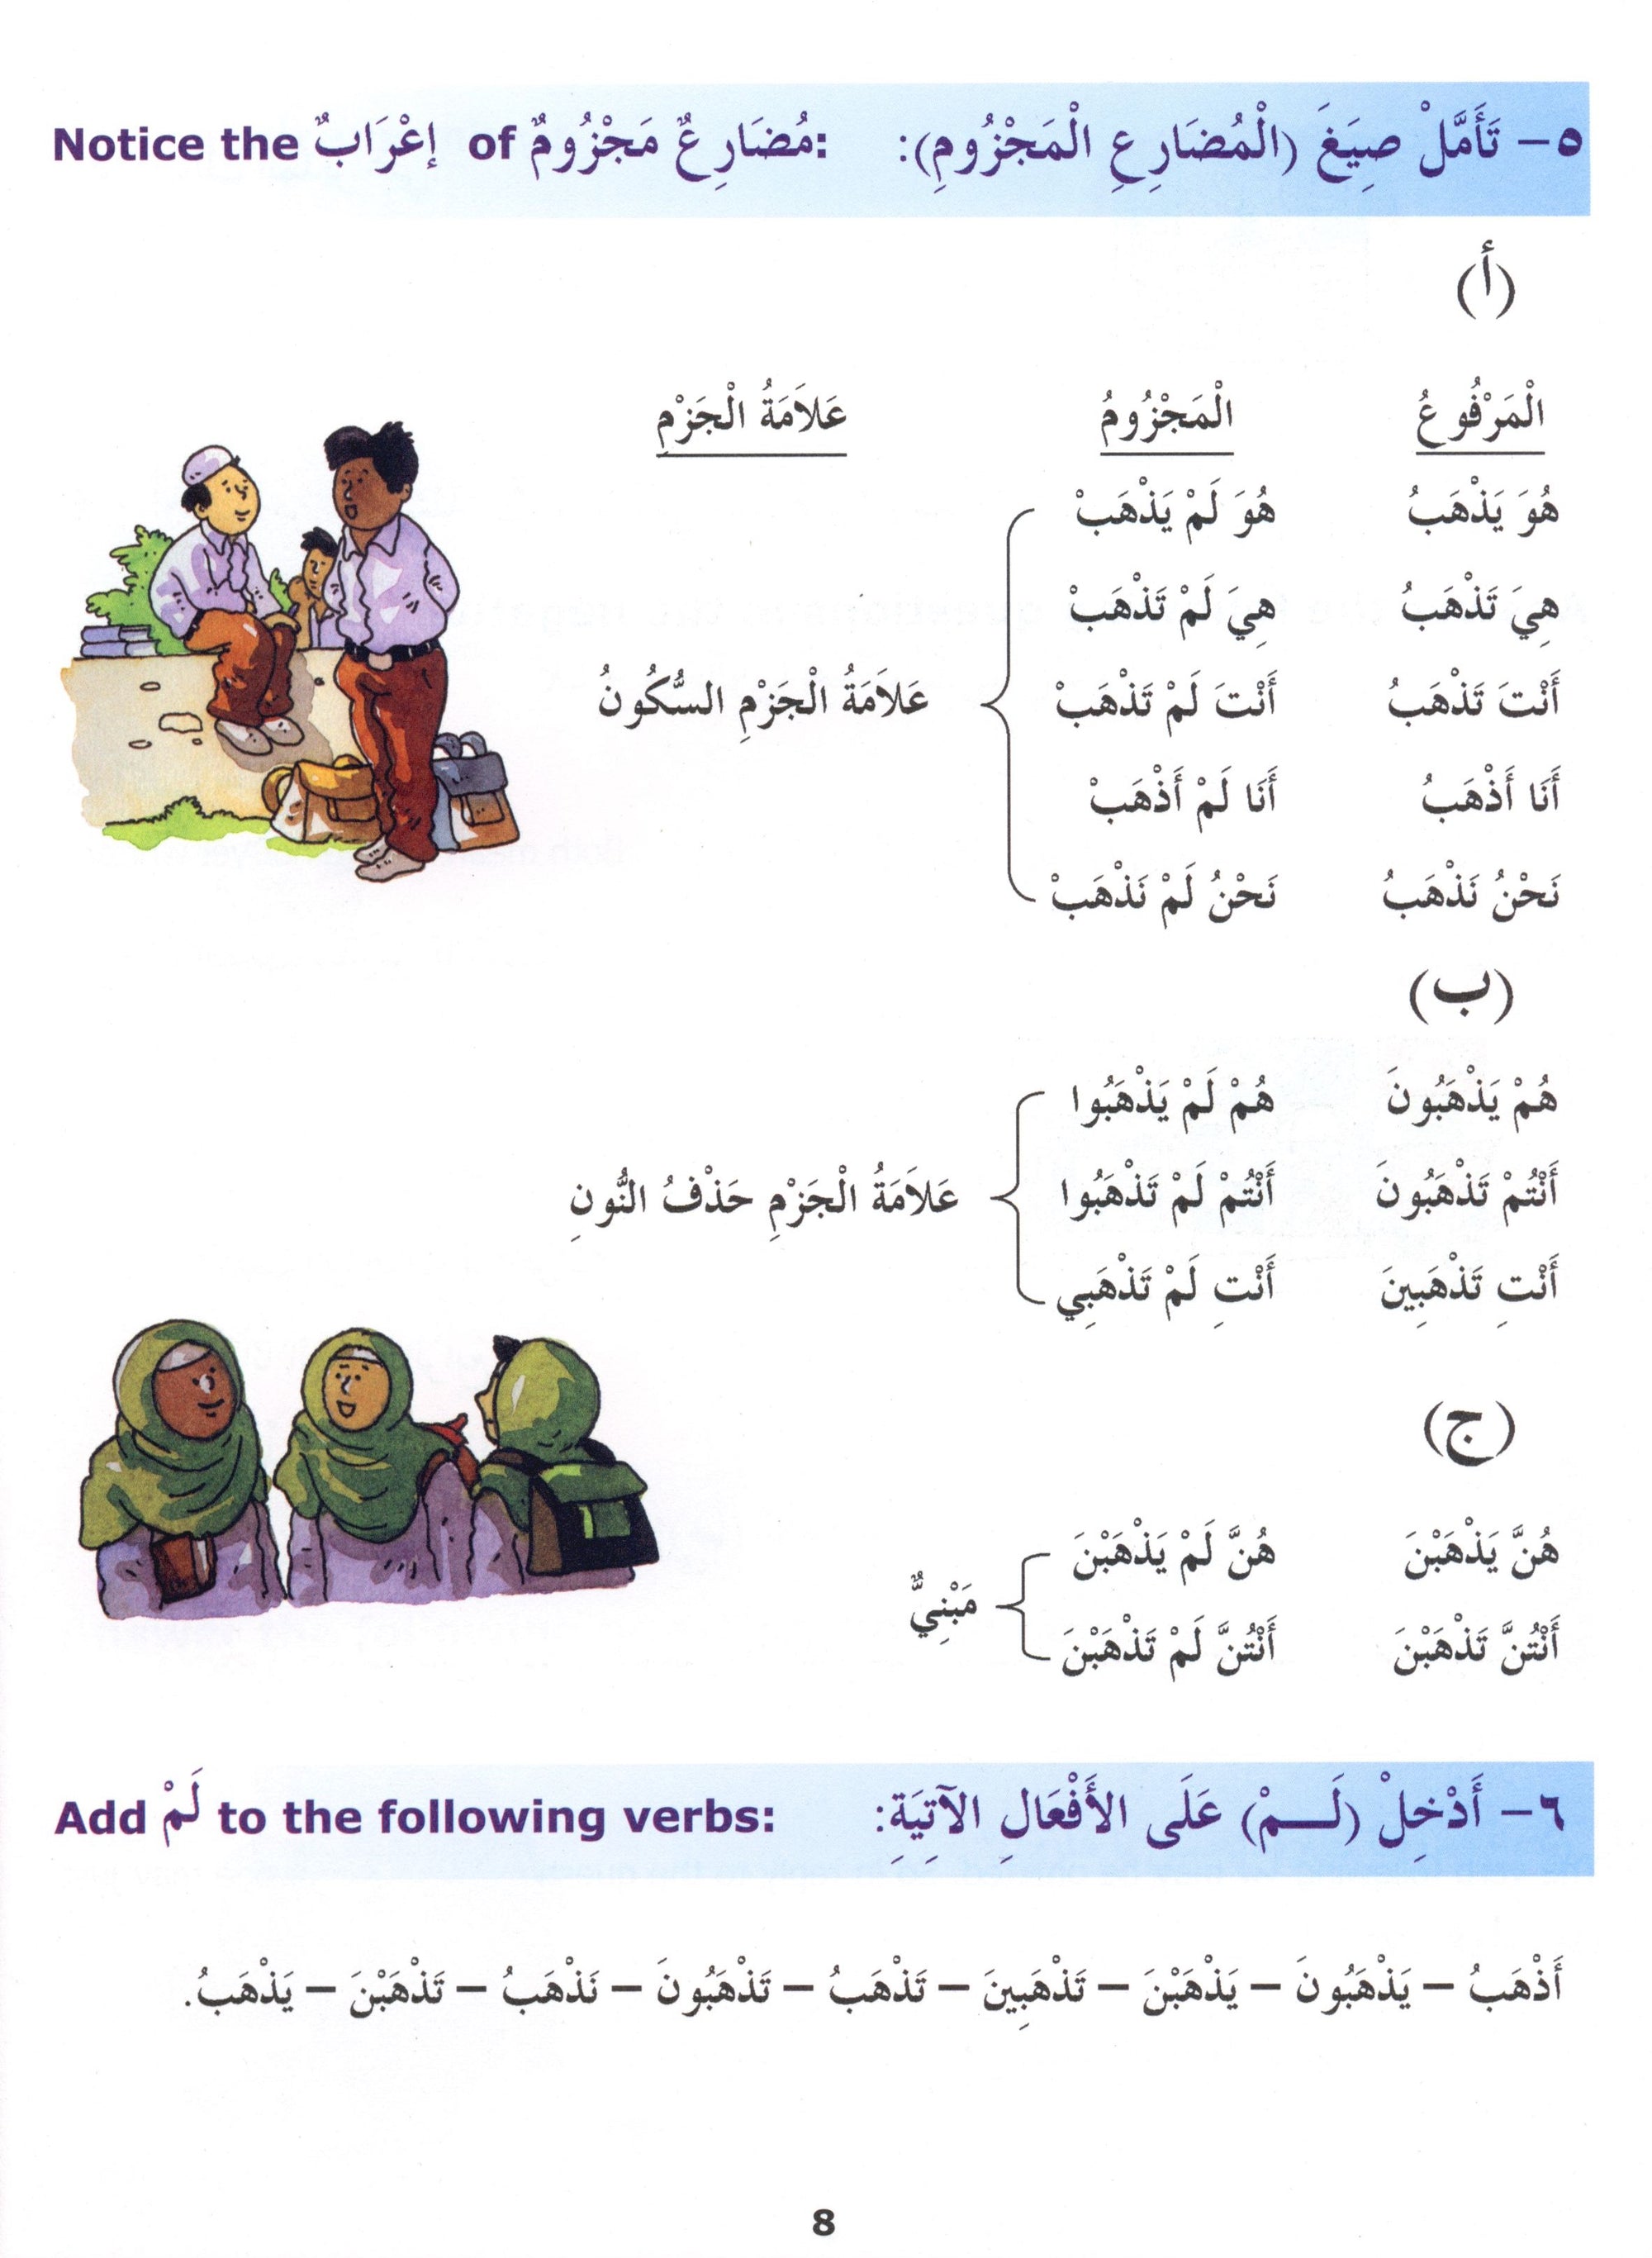 Madinah Arabic Reader Book 5